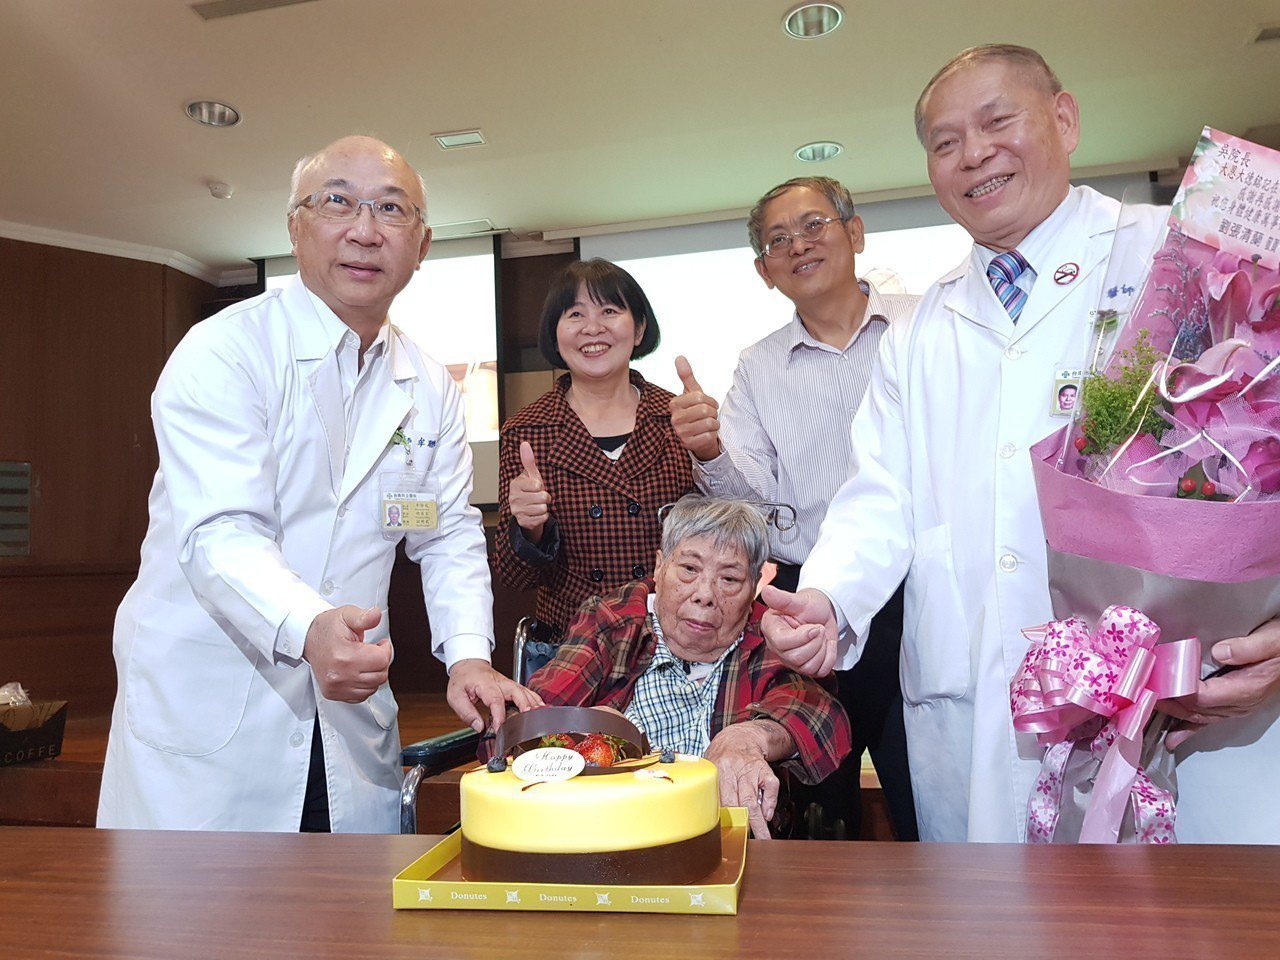 台南市立醫院今天為食道裂孔橫膈疝氣患者慶生。記者修瑞瑩/攝影